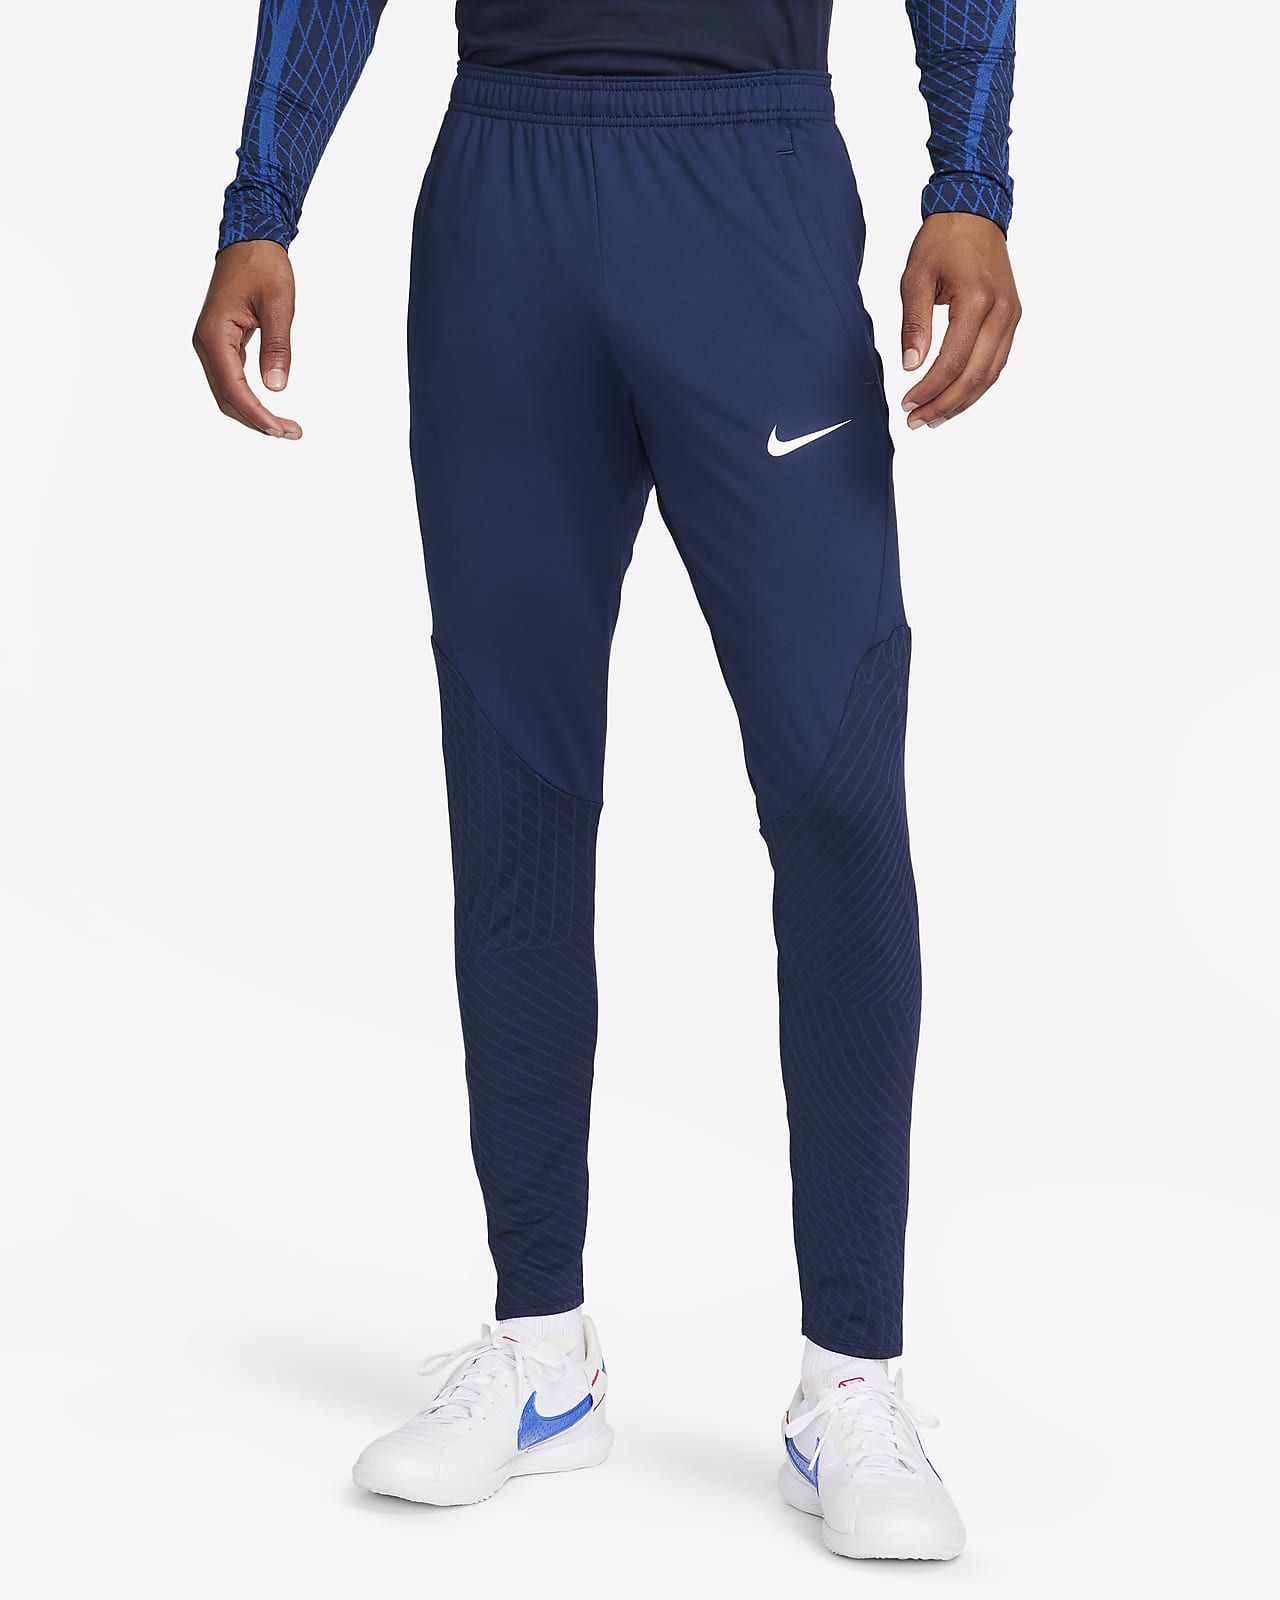 Pants de fútbol para hombre Nike Dri-FIT Strike